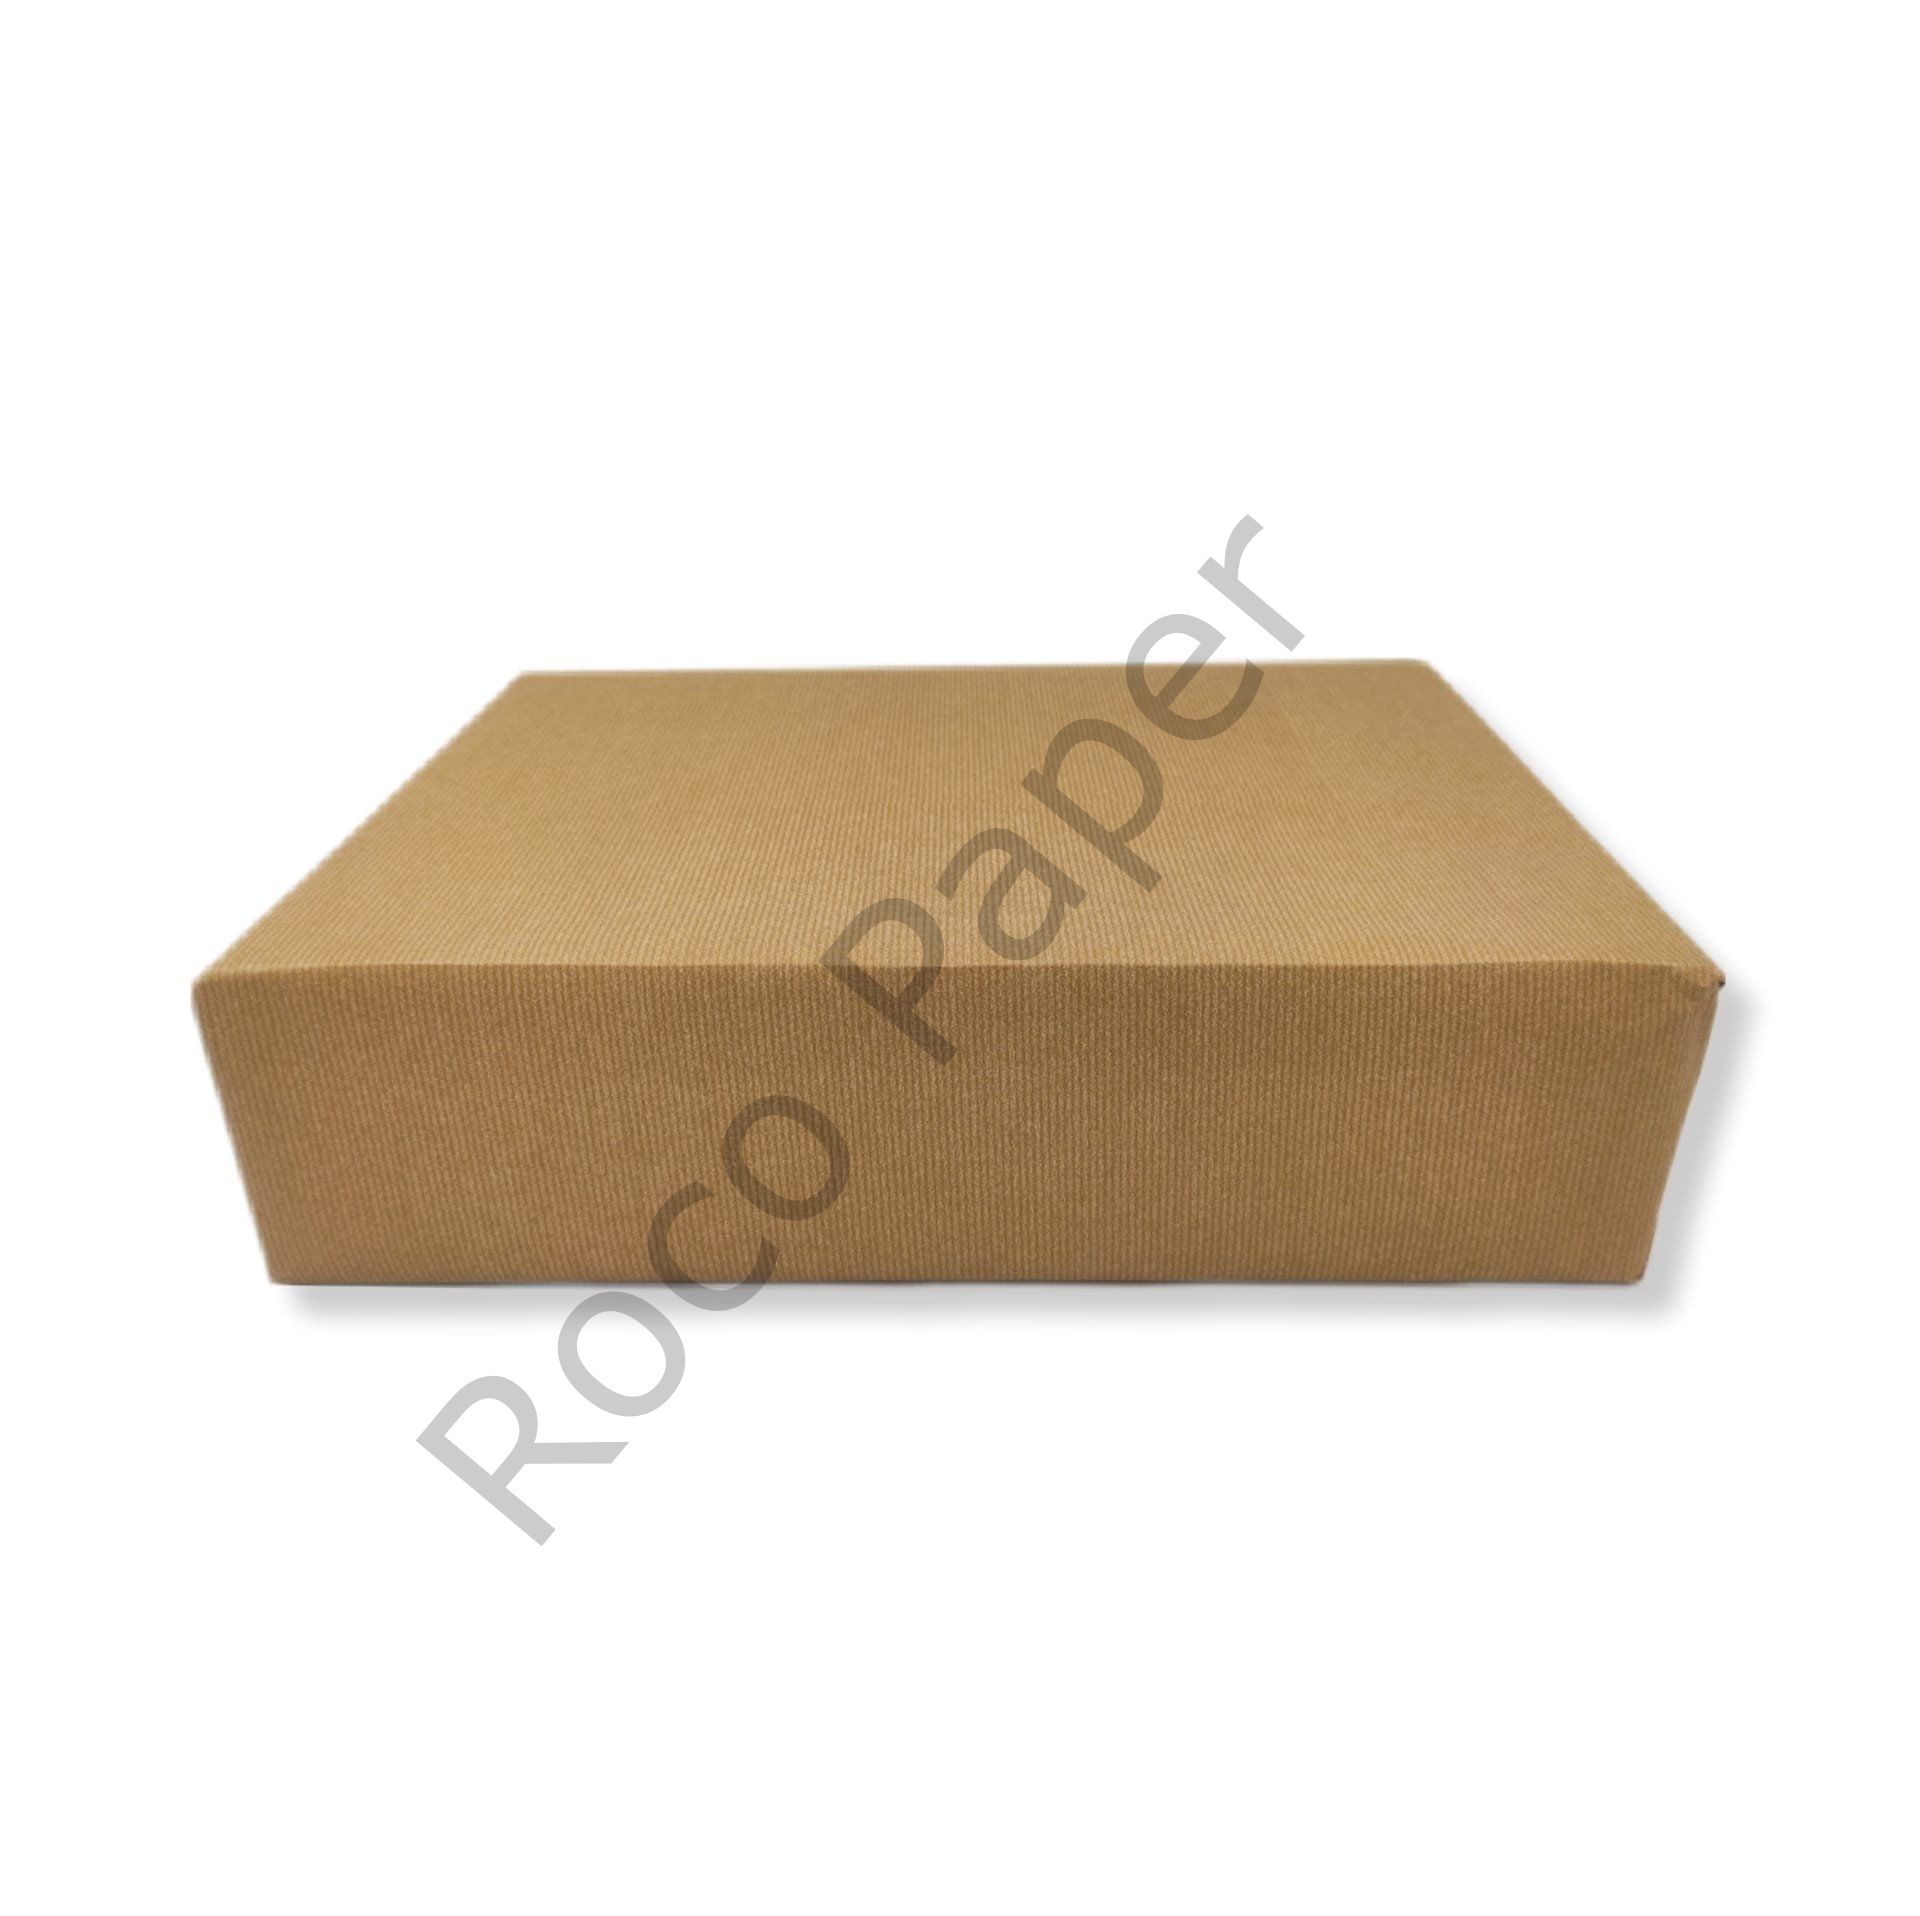 Roco Paper Yerli Premium Hediye Paketleme Ambalaj Kağıdı Altın Çizgili Rulo 70*200 cm